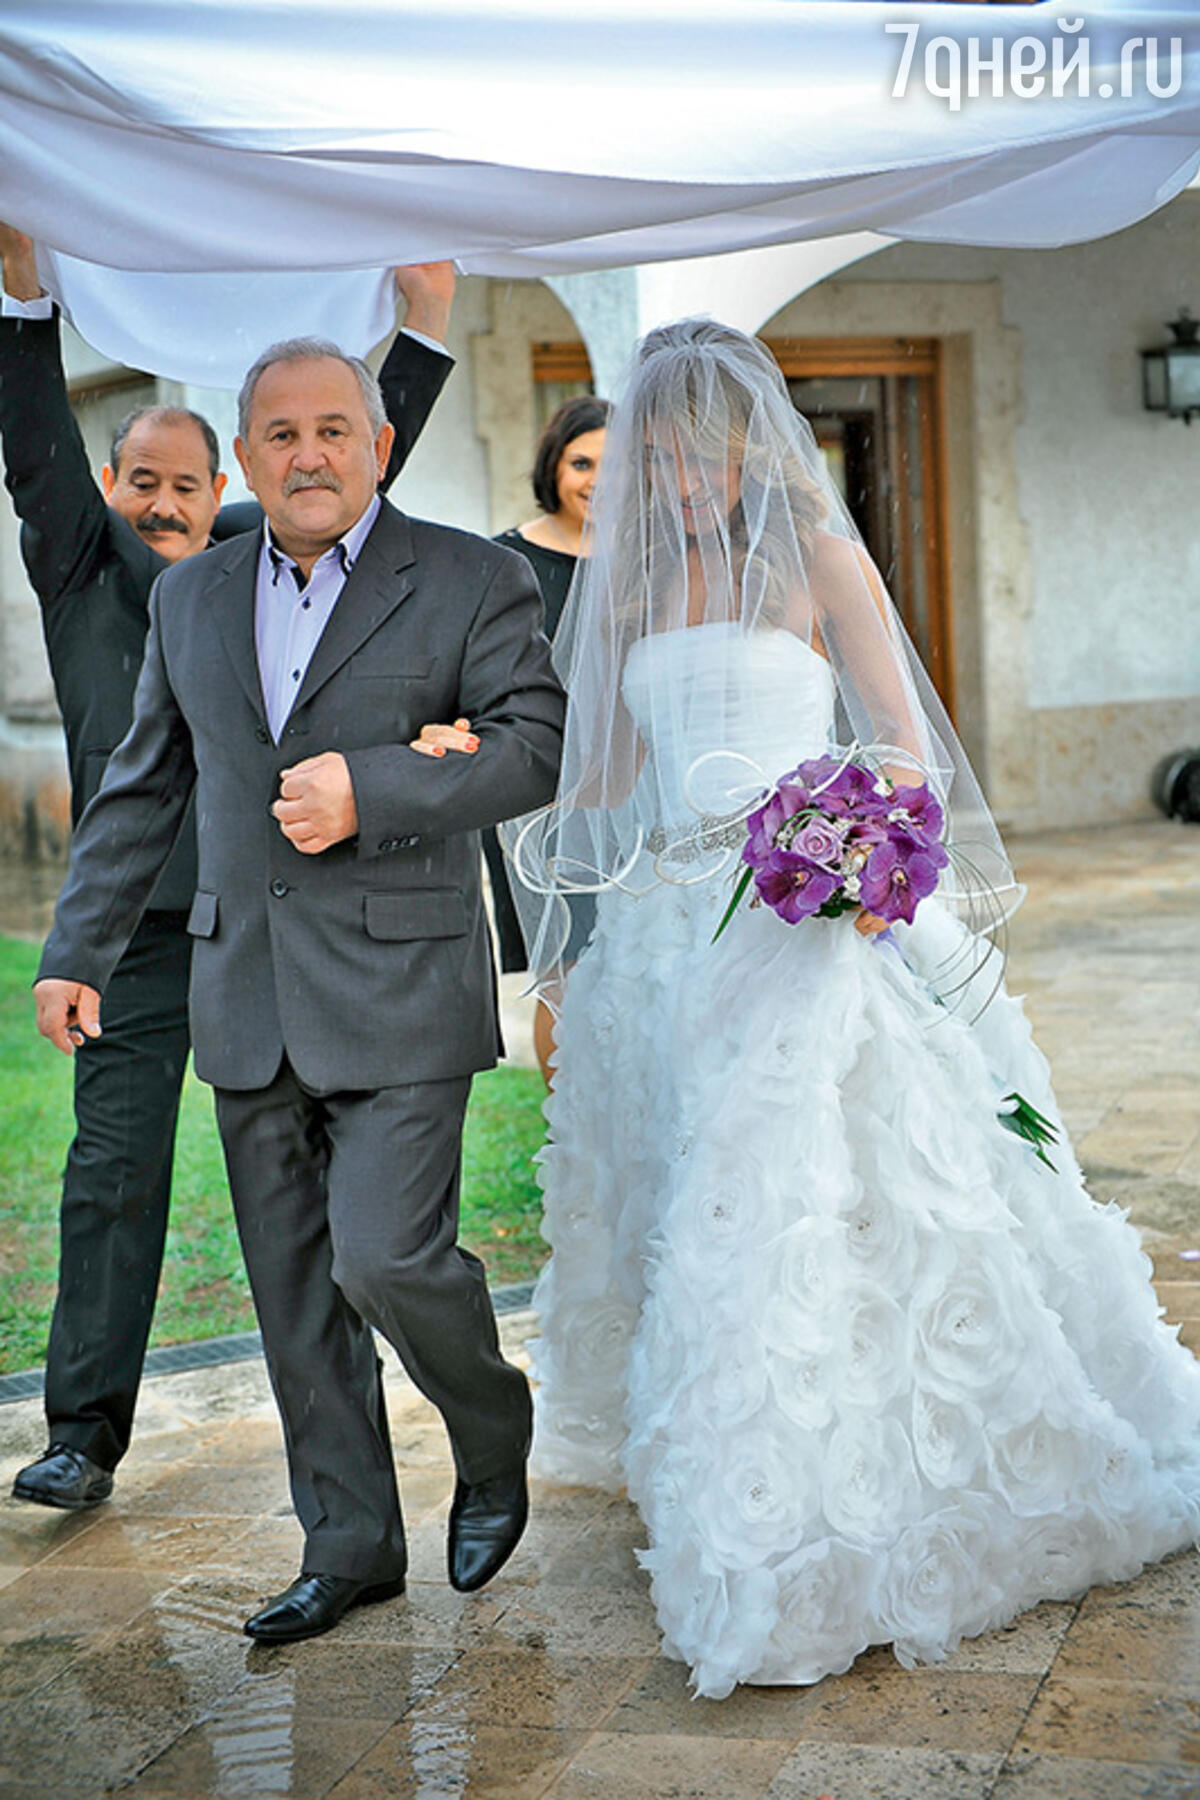 фото свадьбы алексея чумакова